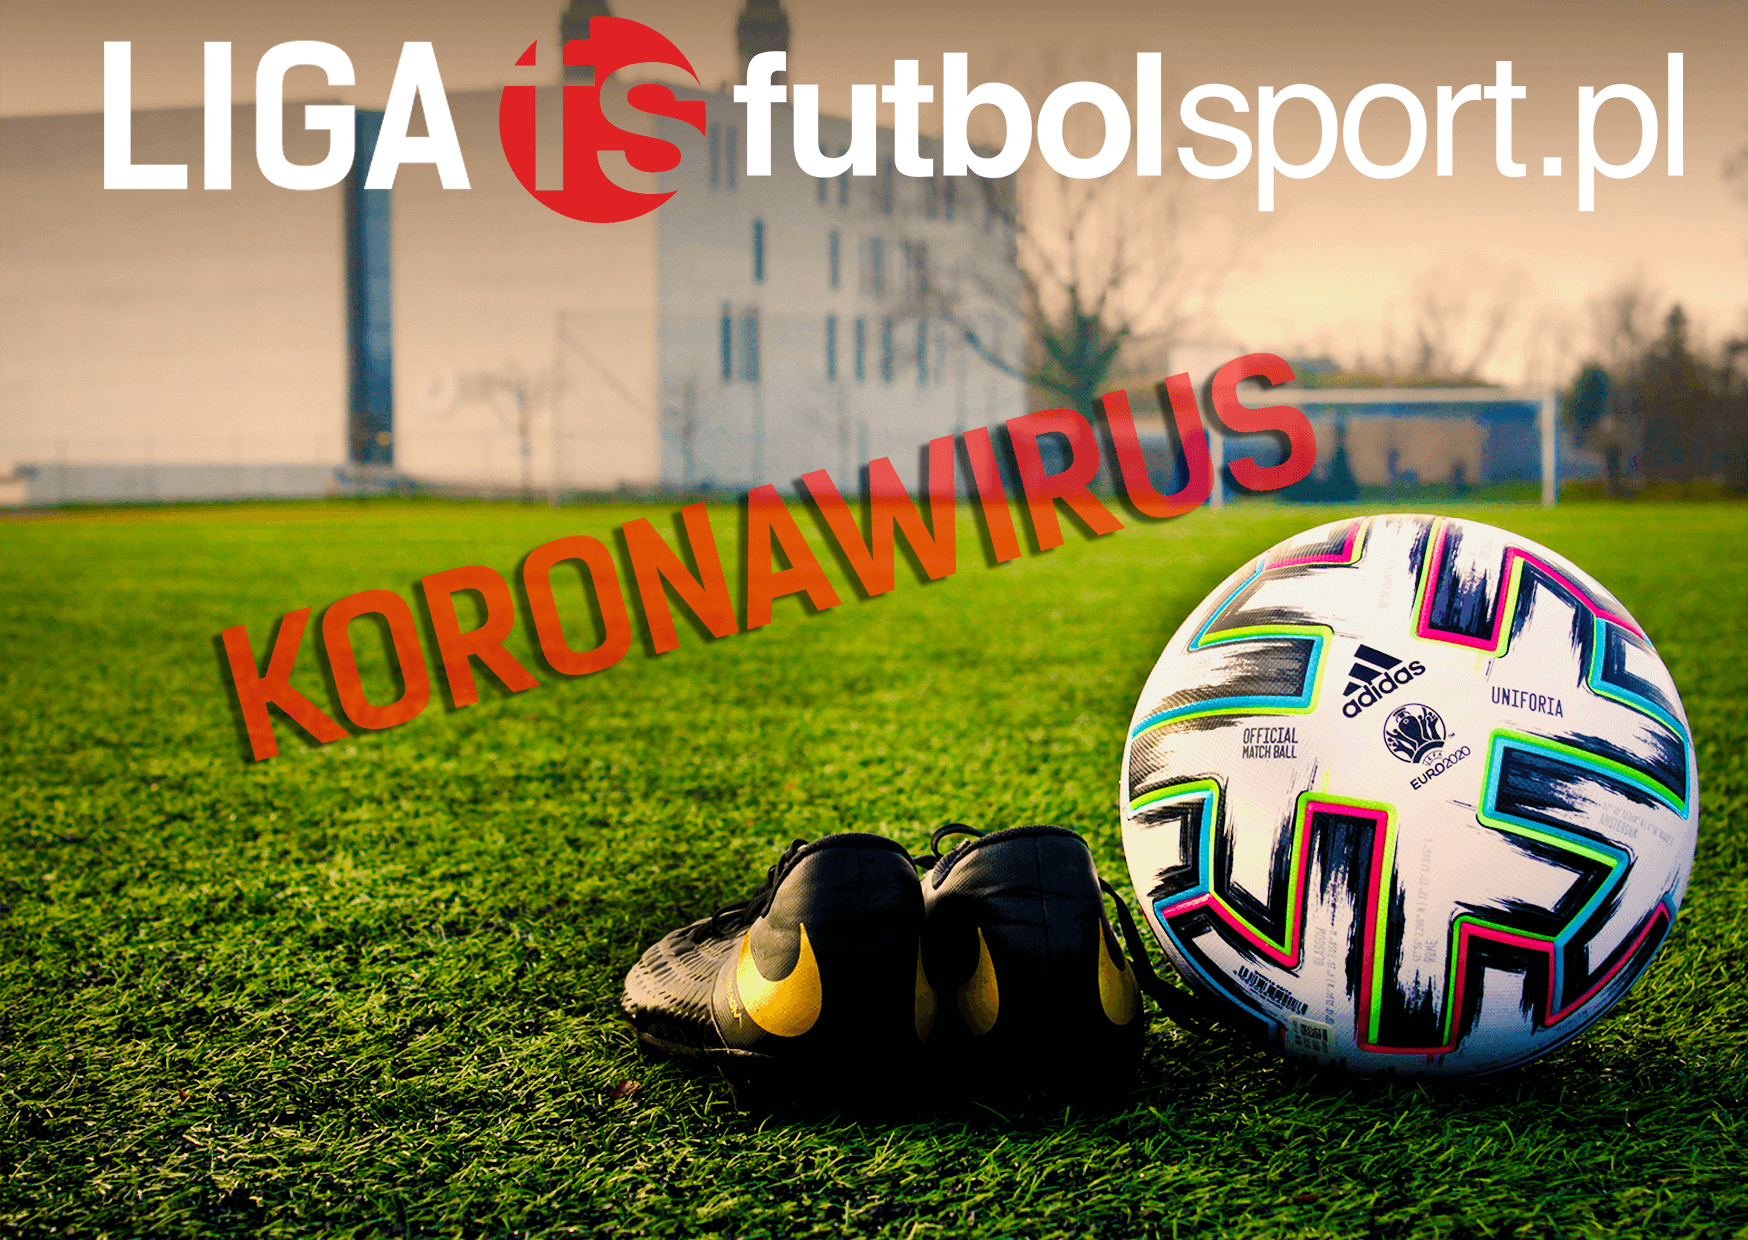 Liga futbolsport.pl przełożona o kolejny tydzień